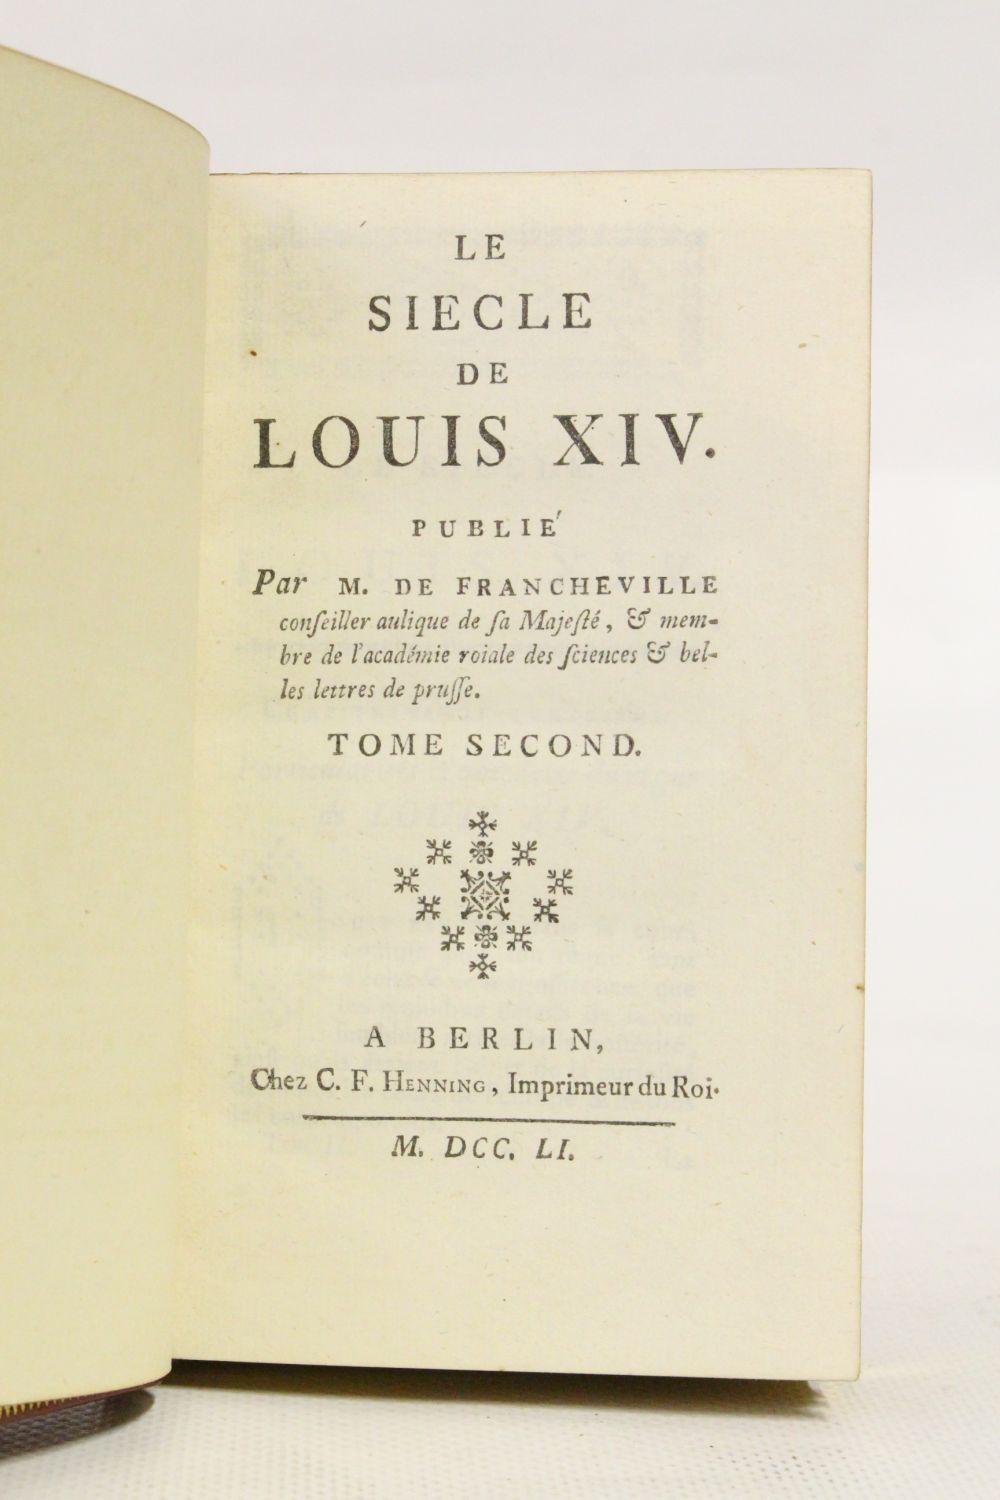 Le siècle de Louis XIV by Voltaire